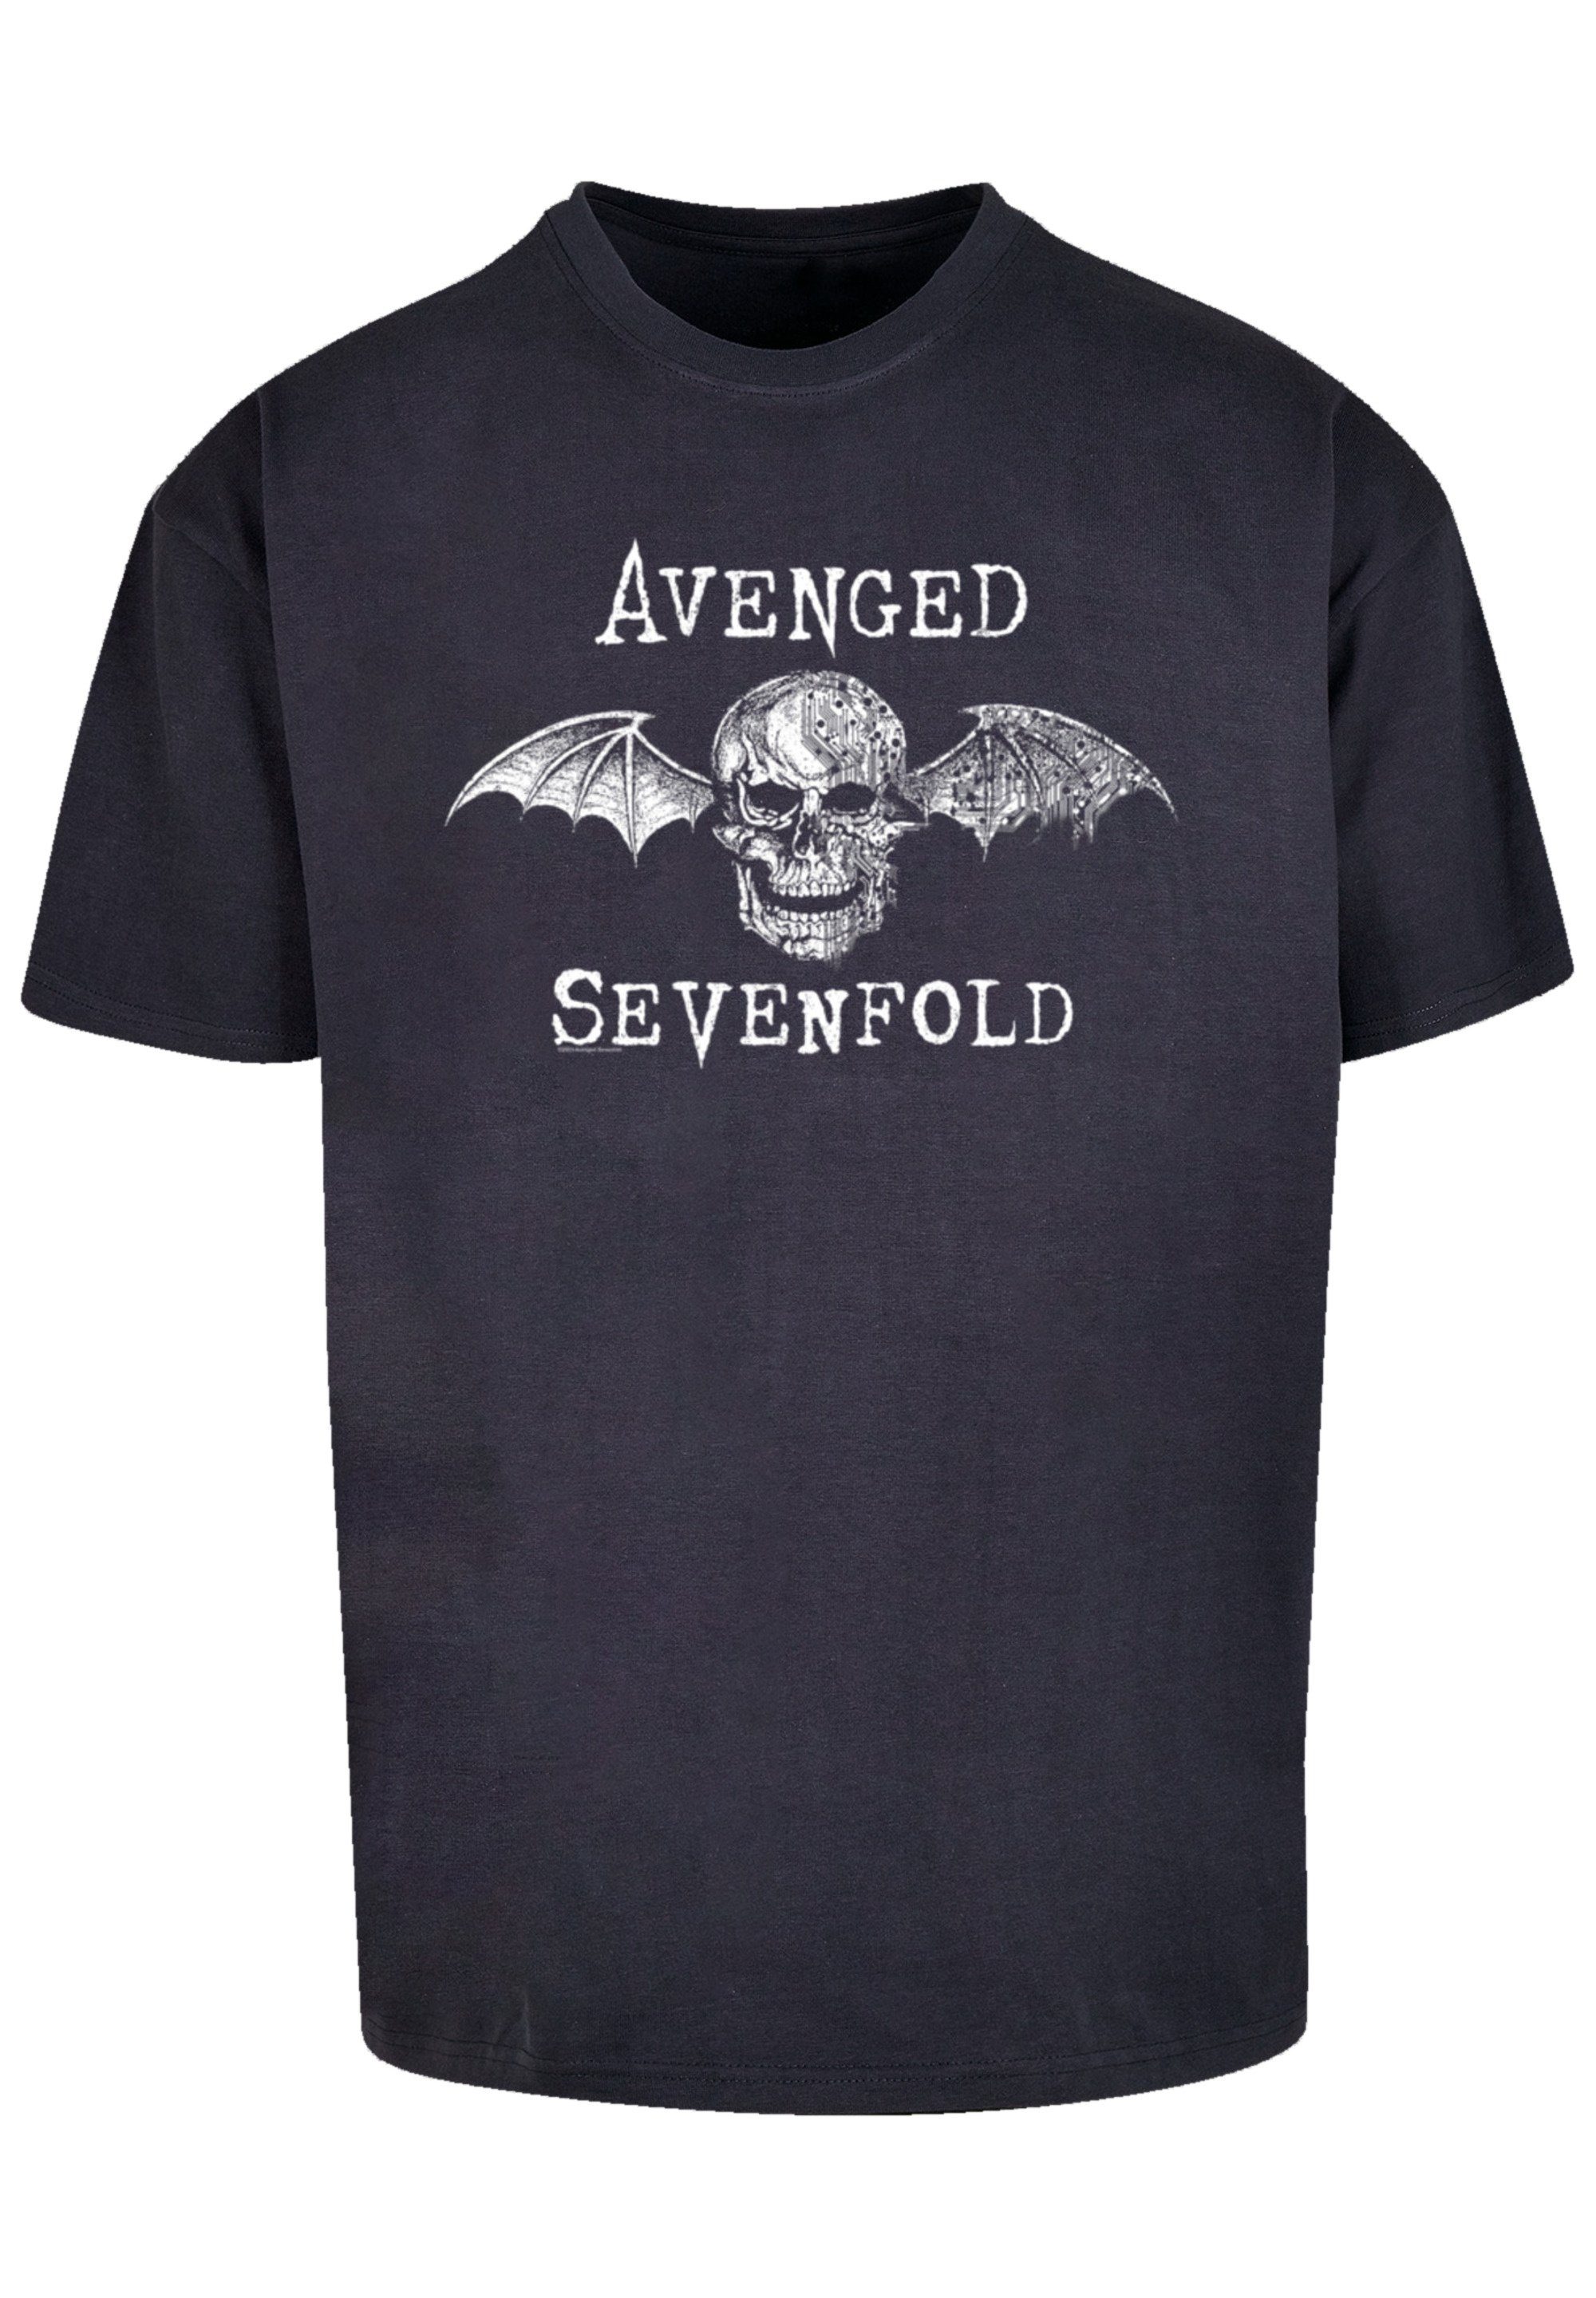 Schultern überschnittene und Rock Cyborg Sevenfold Avenged Weite Band Qualität, T-Shirt F4NT4STIC Metal Band, Passform Rock-Musik, Premium Bat